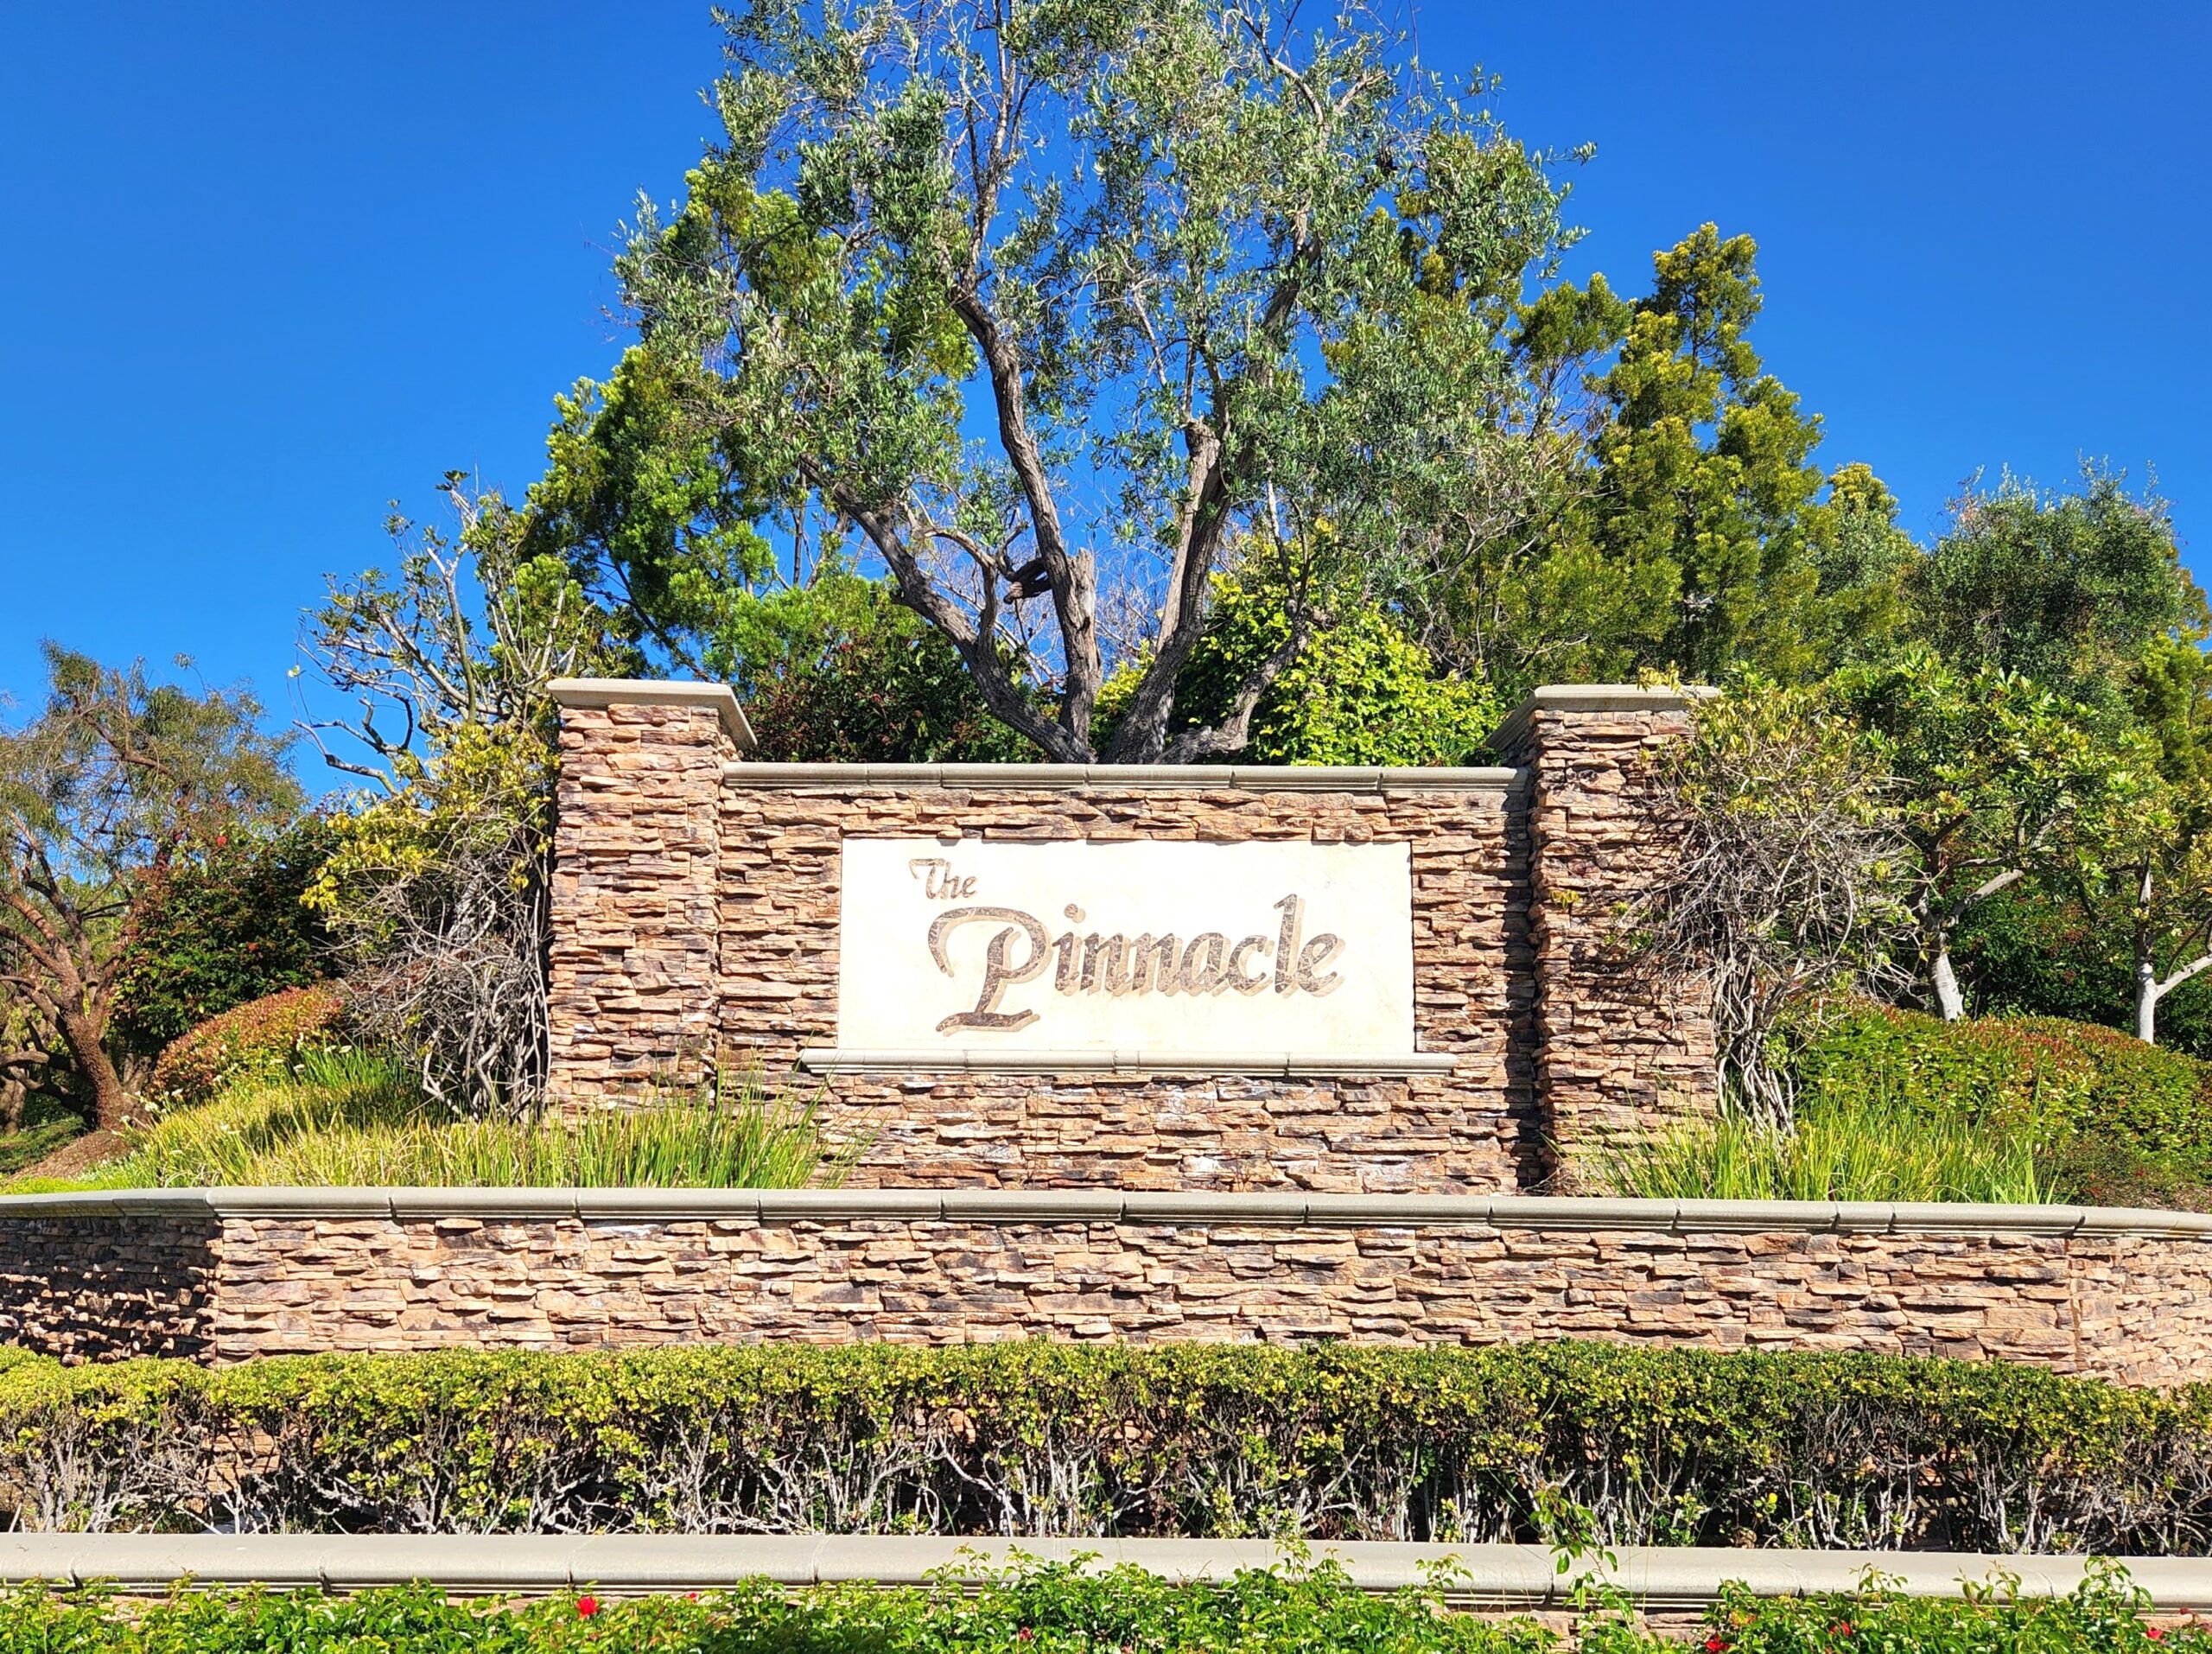 The Pinnacle, Camarillo